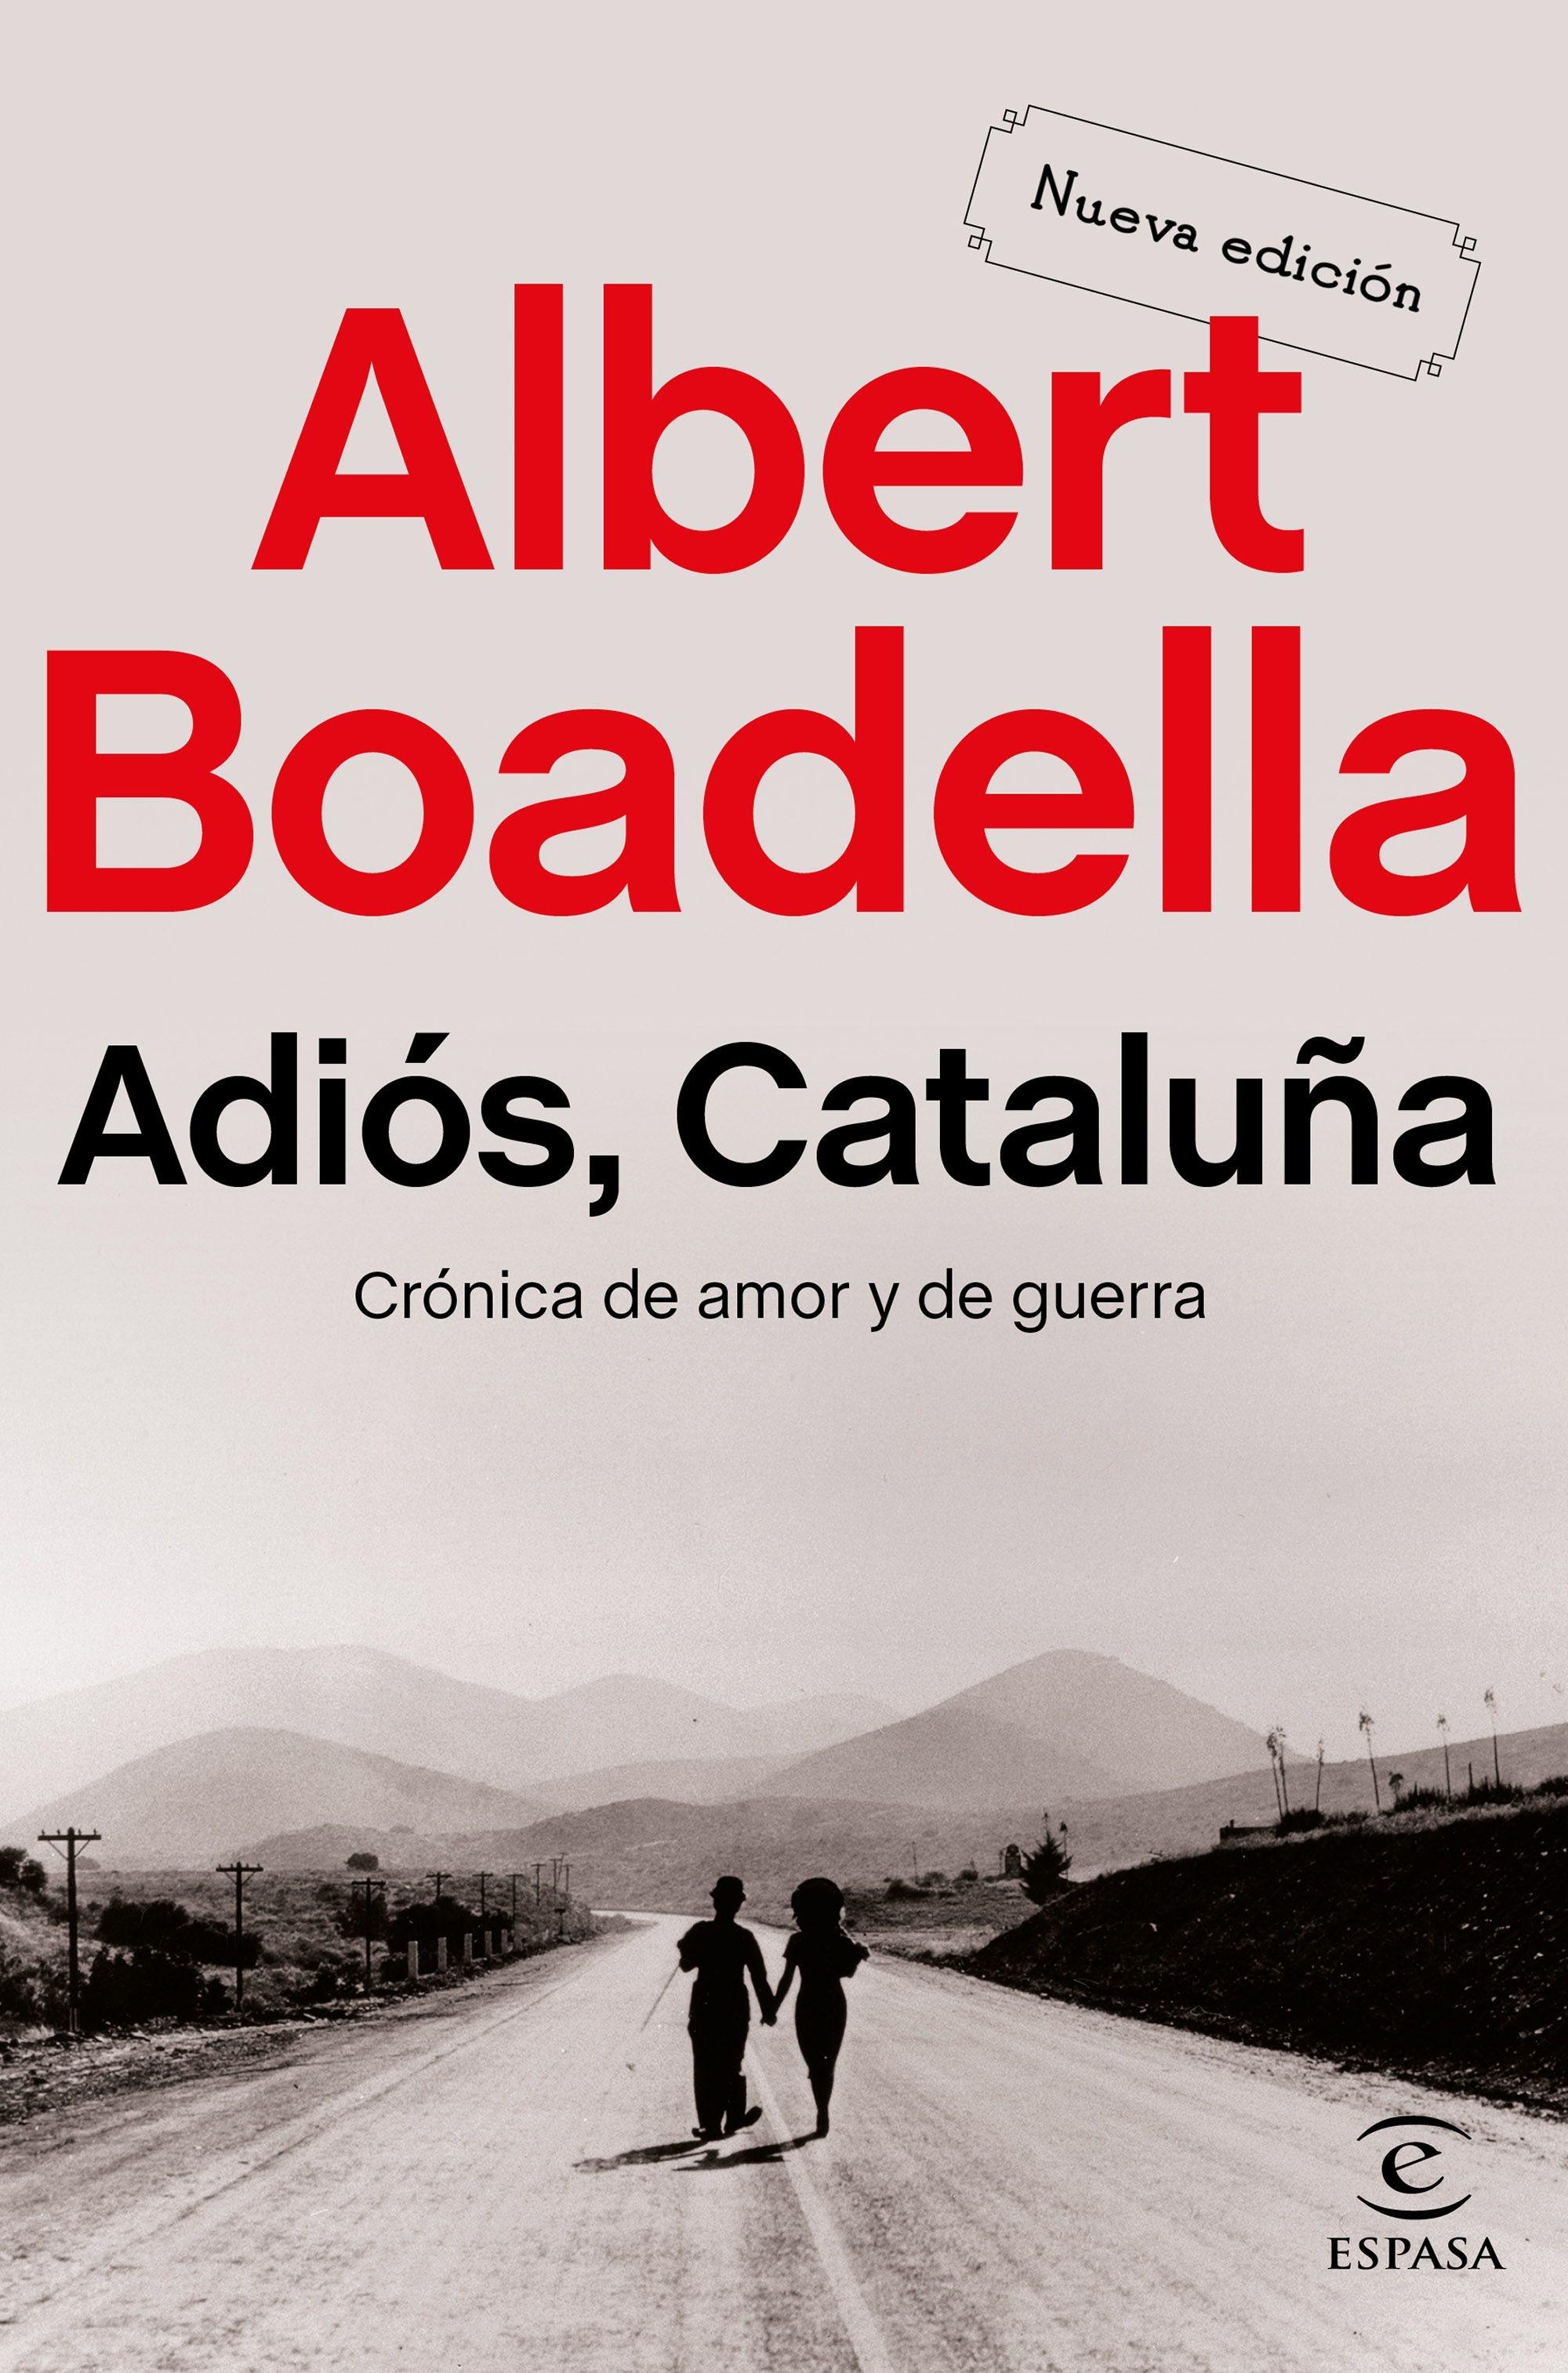 Adiós Cataluña "Crónica de amor y de guerra"